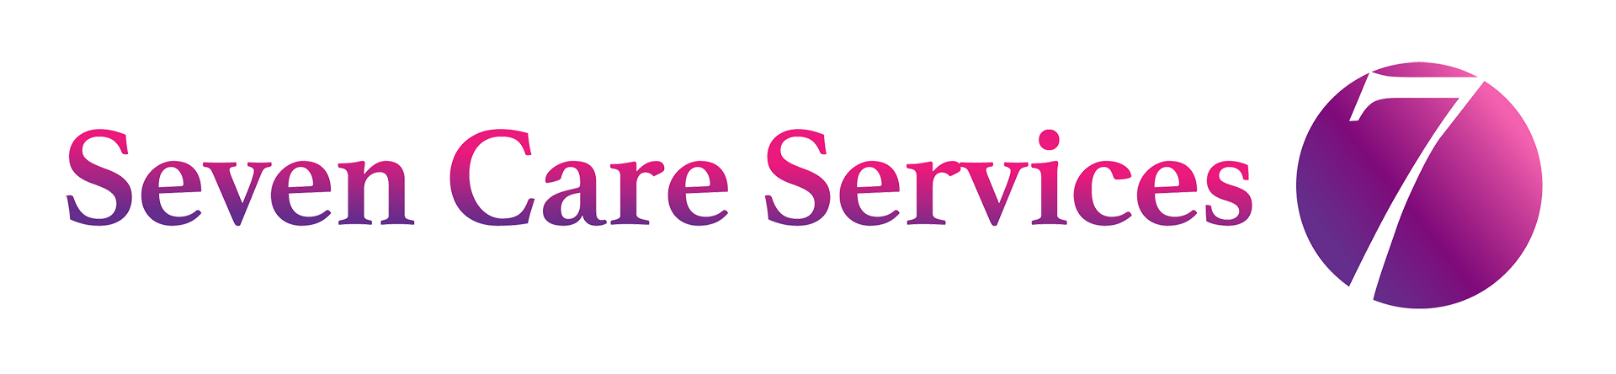 Seven Care Services